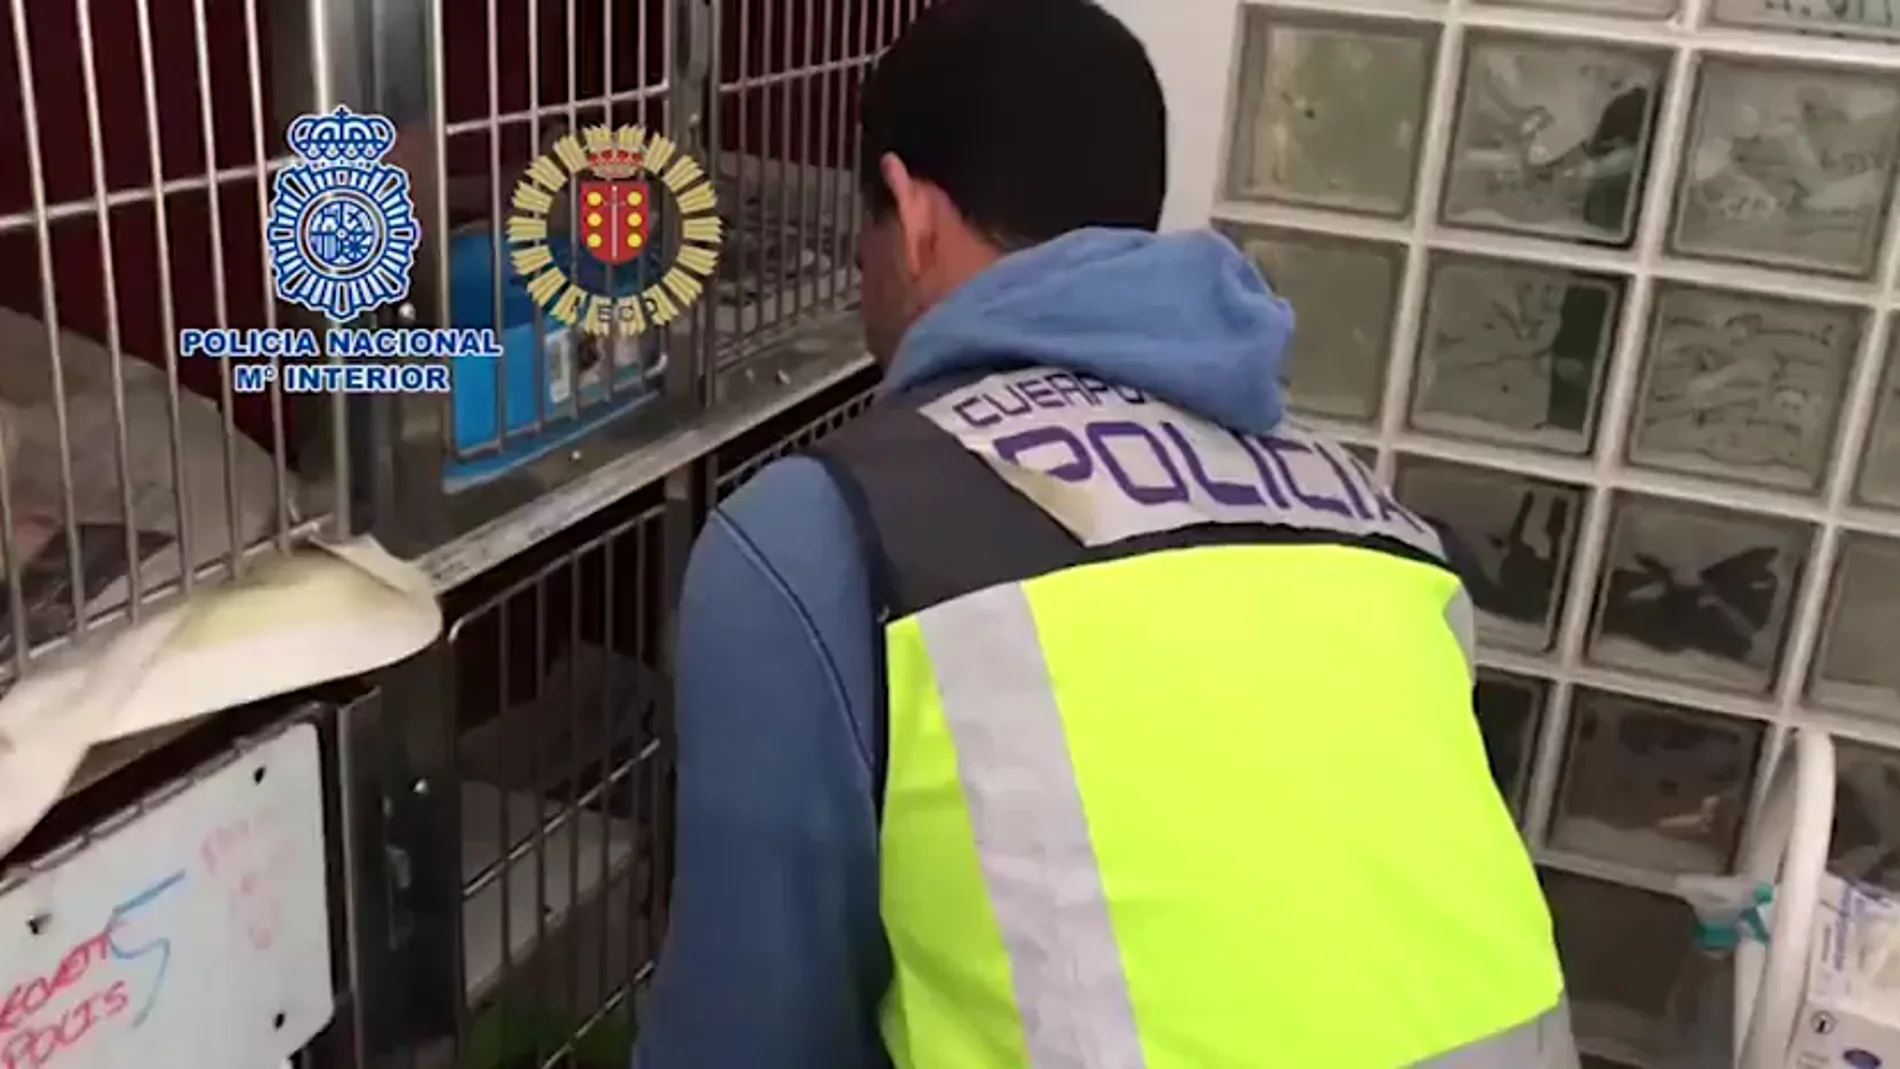 Desmantelan un criadero ilegal de chihuahuas y rescatan a 12 perros en una vivienda de Meco, Madrid